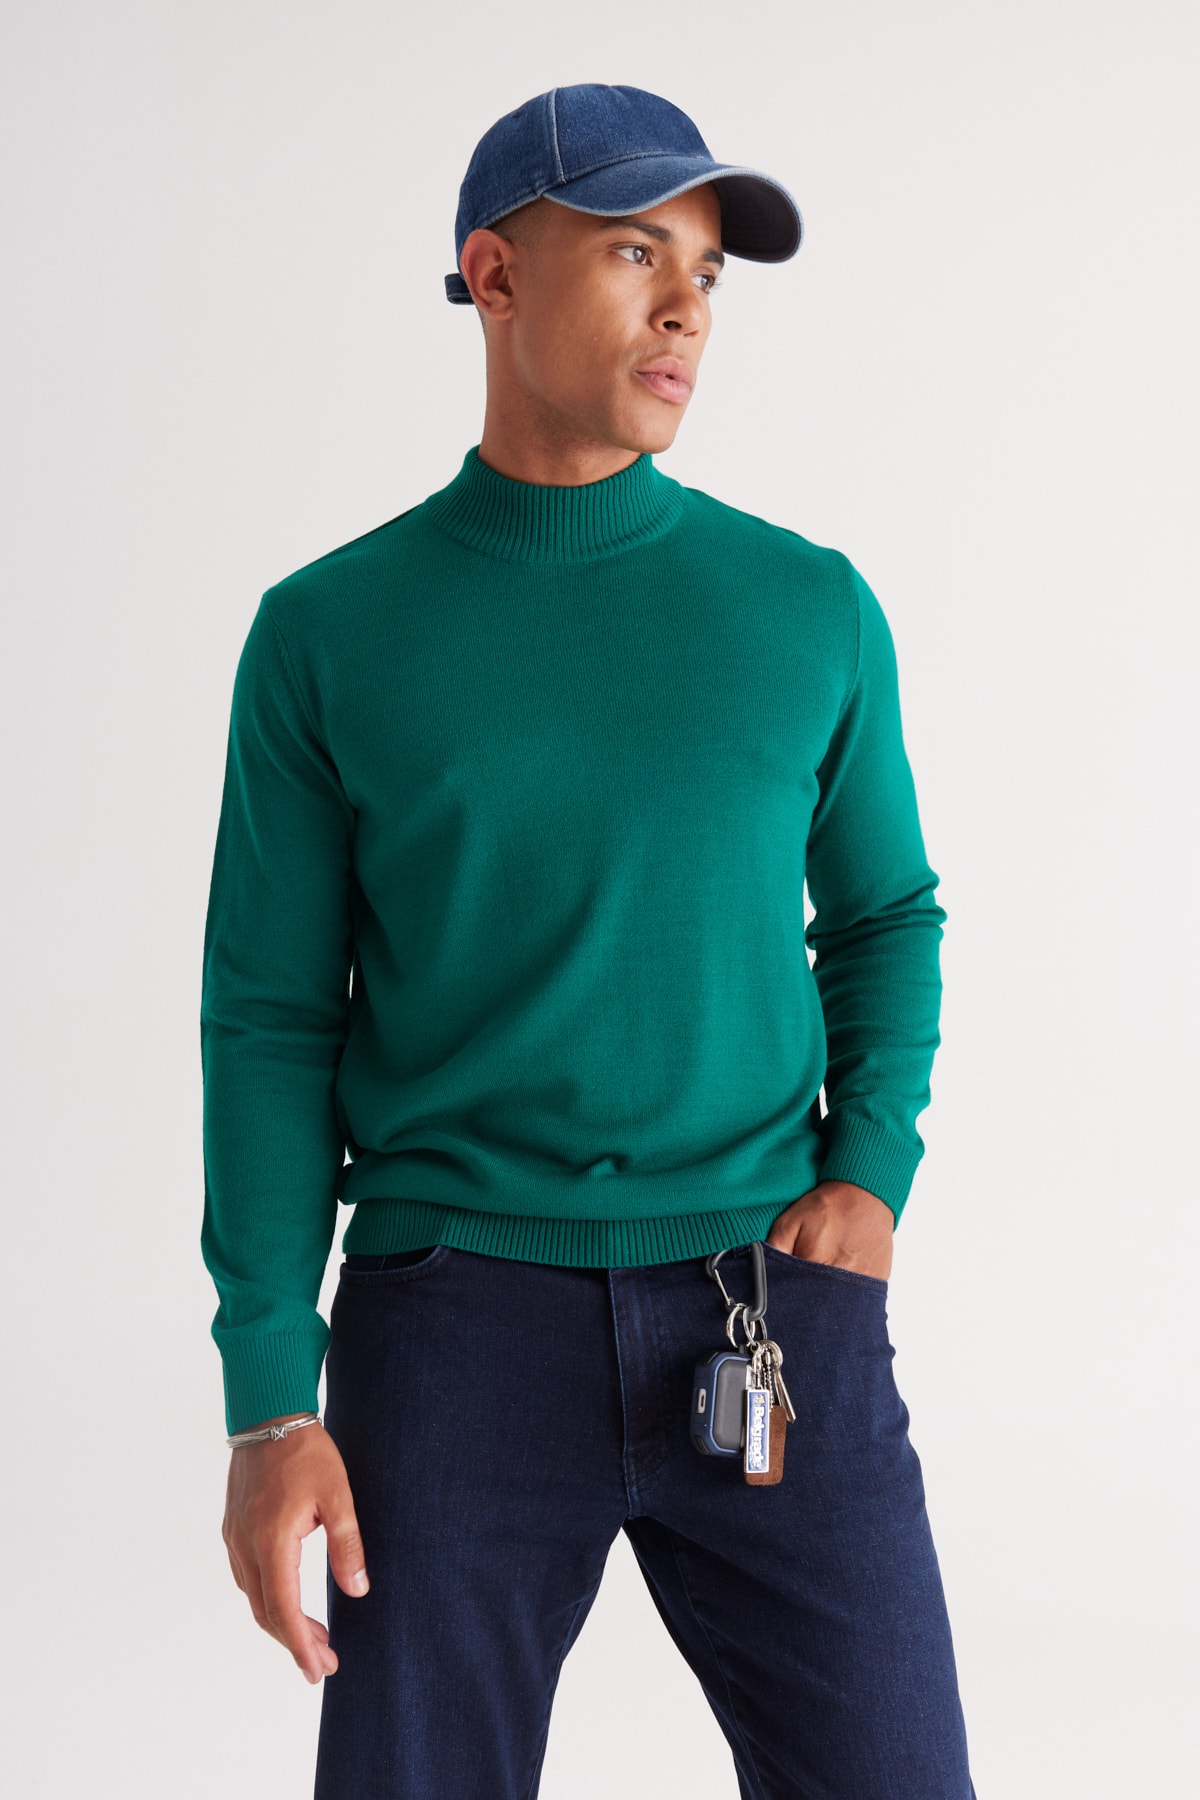 ALTINYILDIZ CLASSICS Men's Dark Green Anti-Pilling Standard Fit Normal Cut Half Turtleneck Knitwear Sweater.